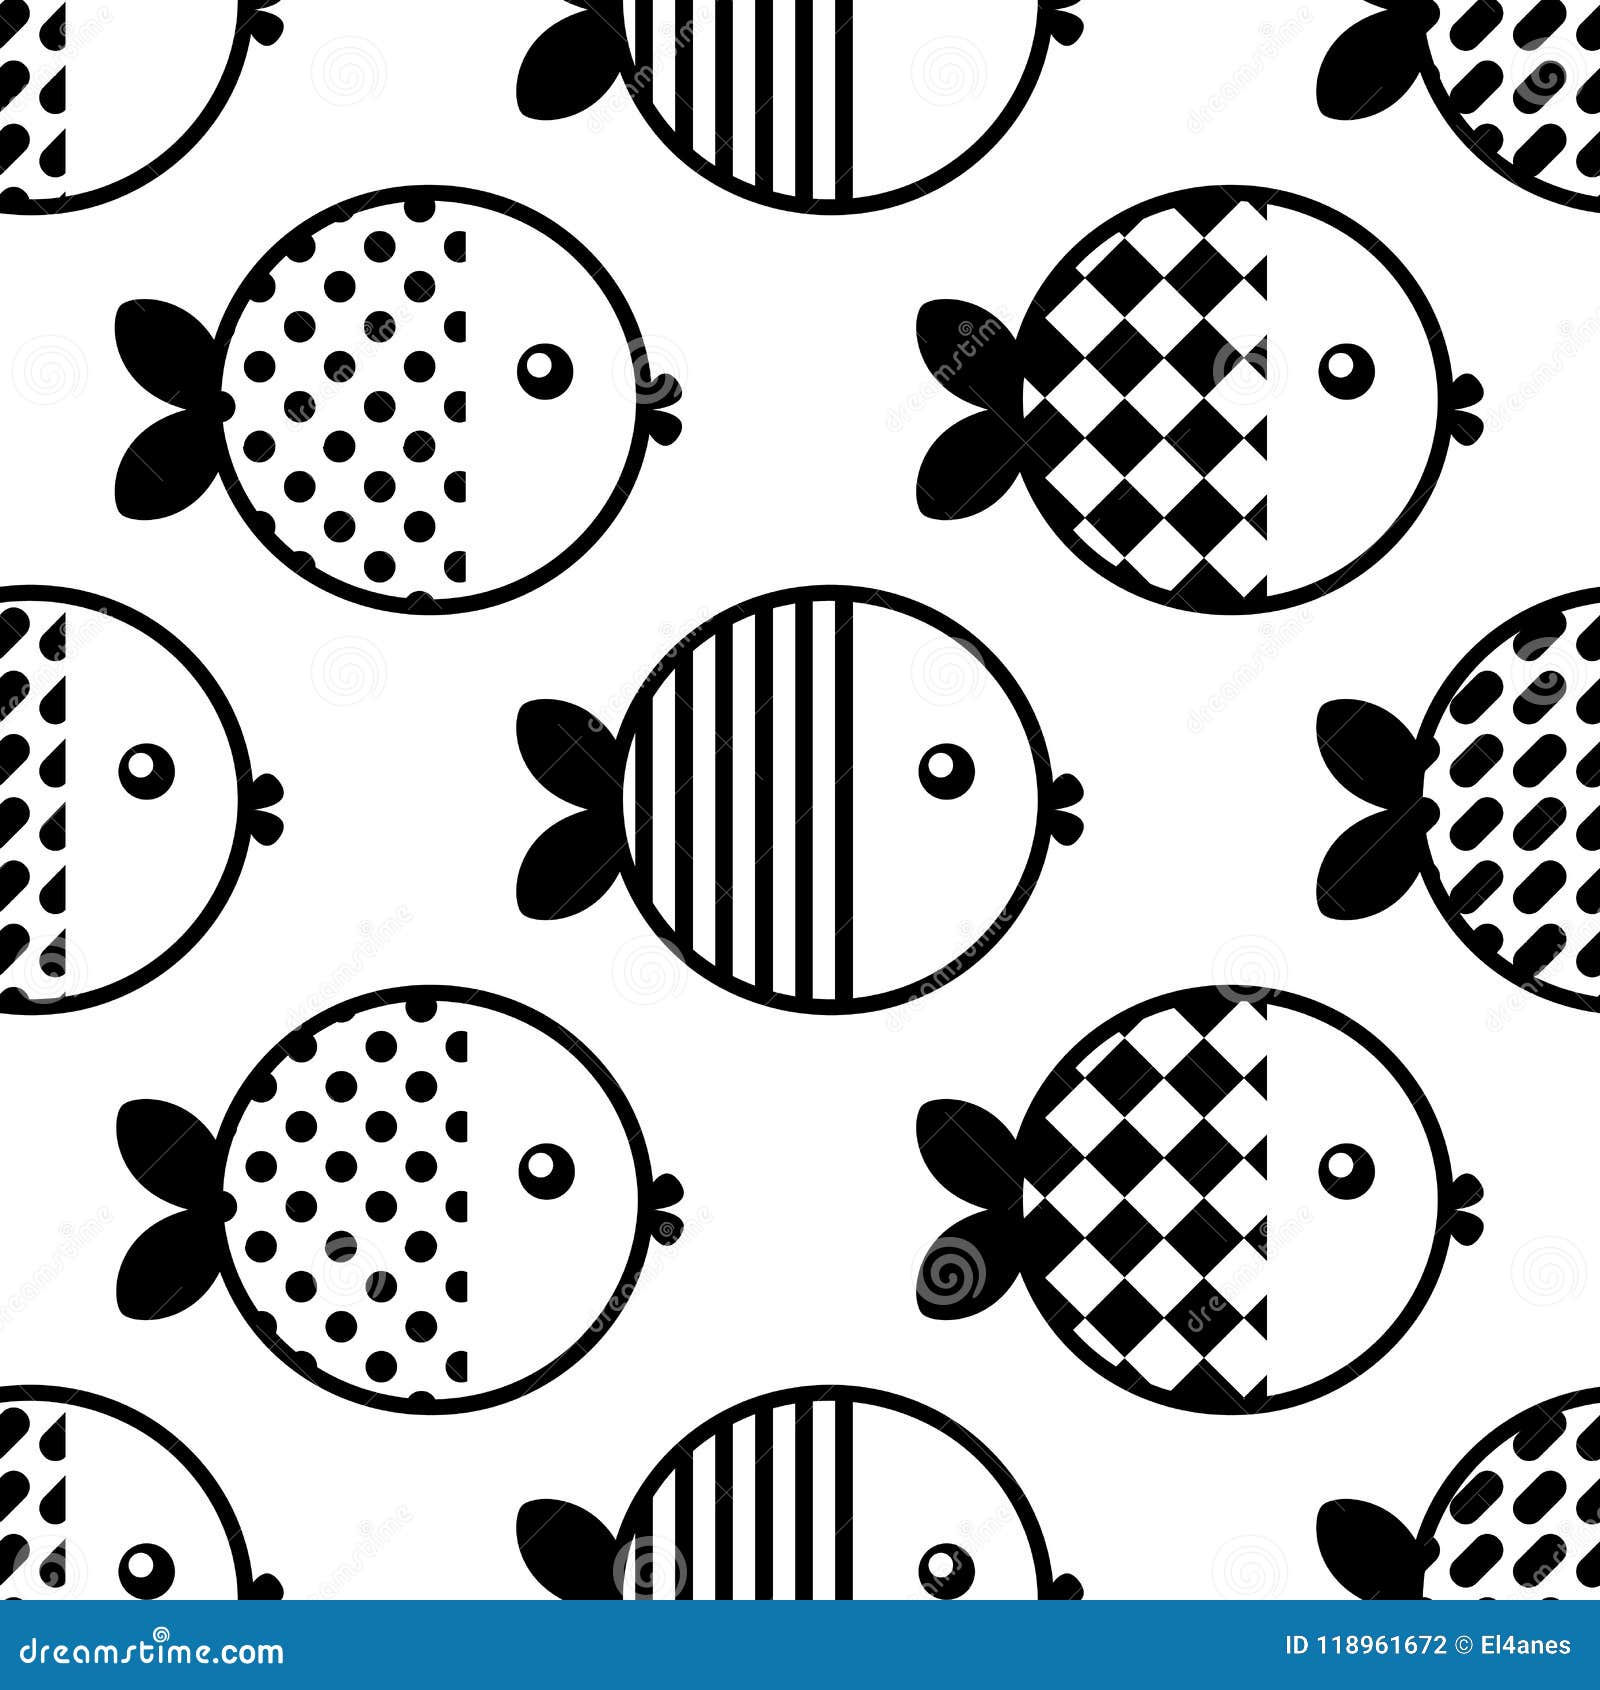 Fish wallpaper. Vector stock vector. Illustration of pond - 118961672